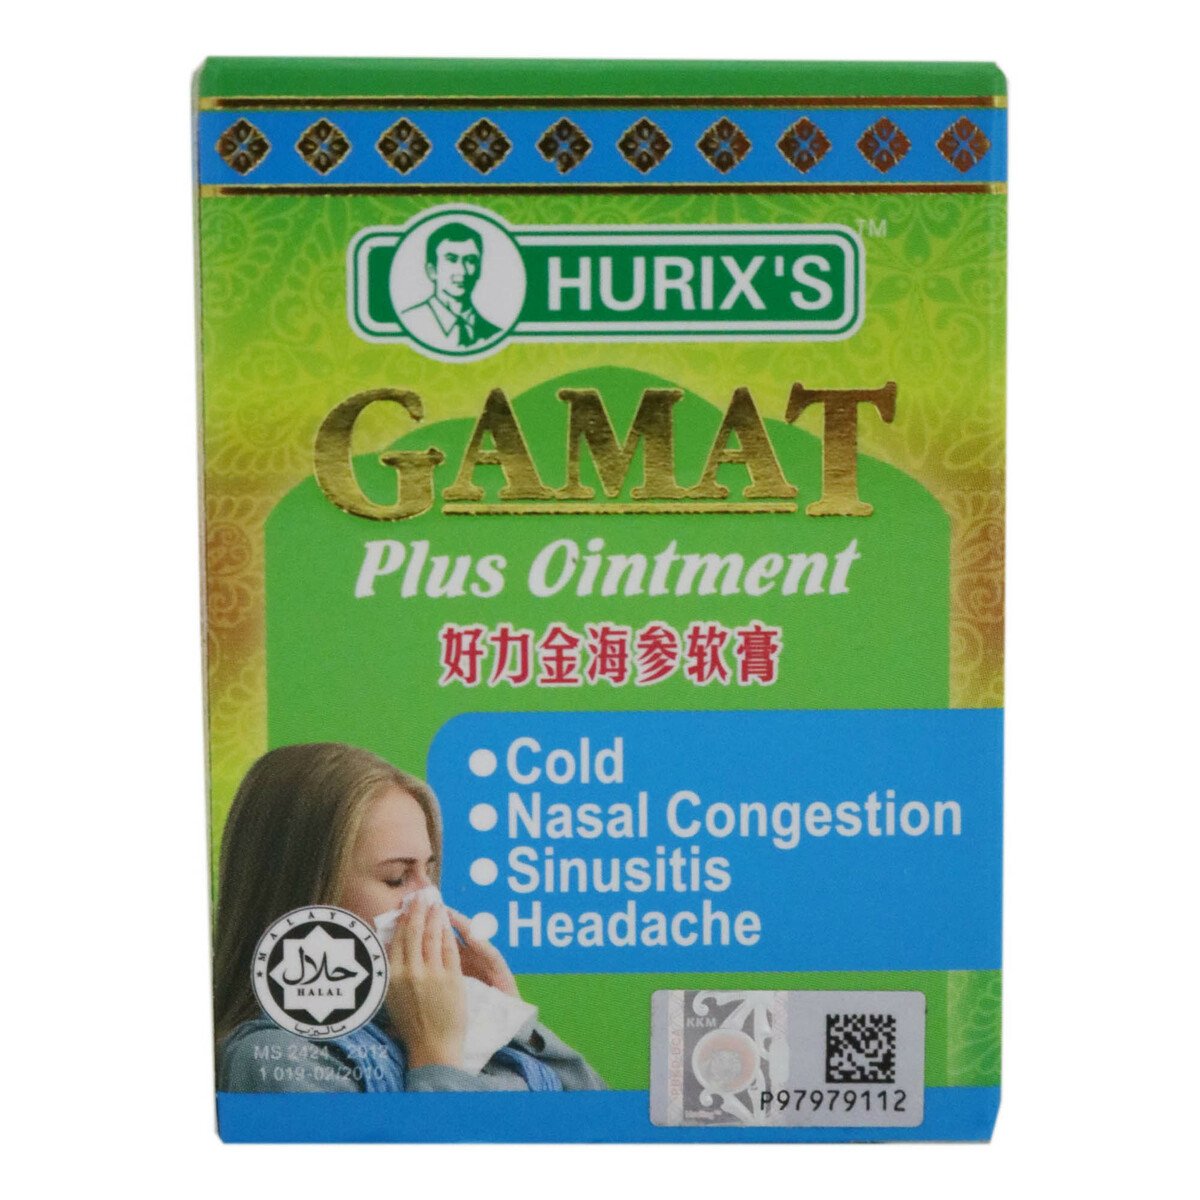 Hurix's Gamat Rub Cool 20g